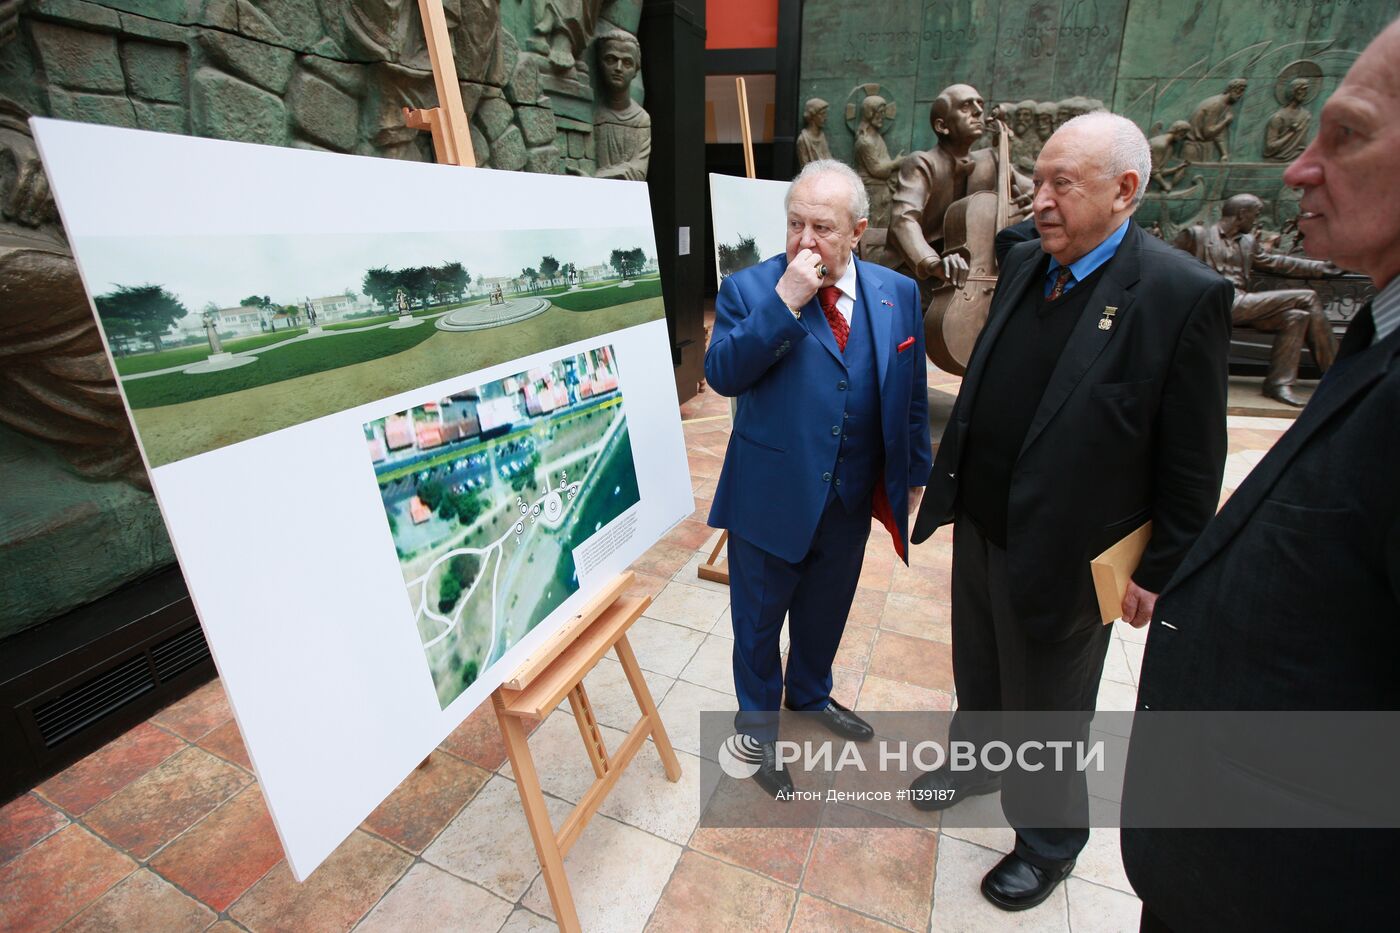 Зураб Церетели представил в Москве памятник Марине Цветаевой